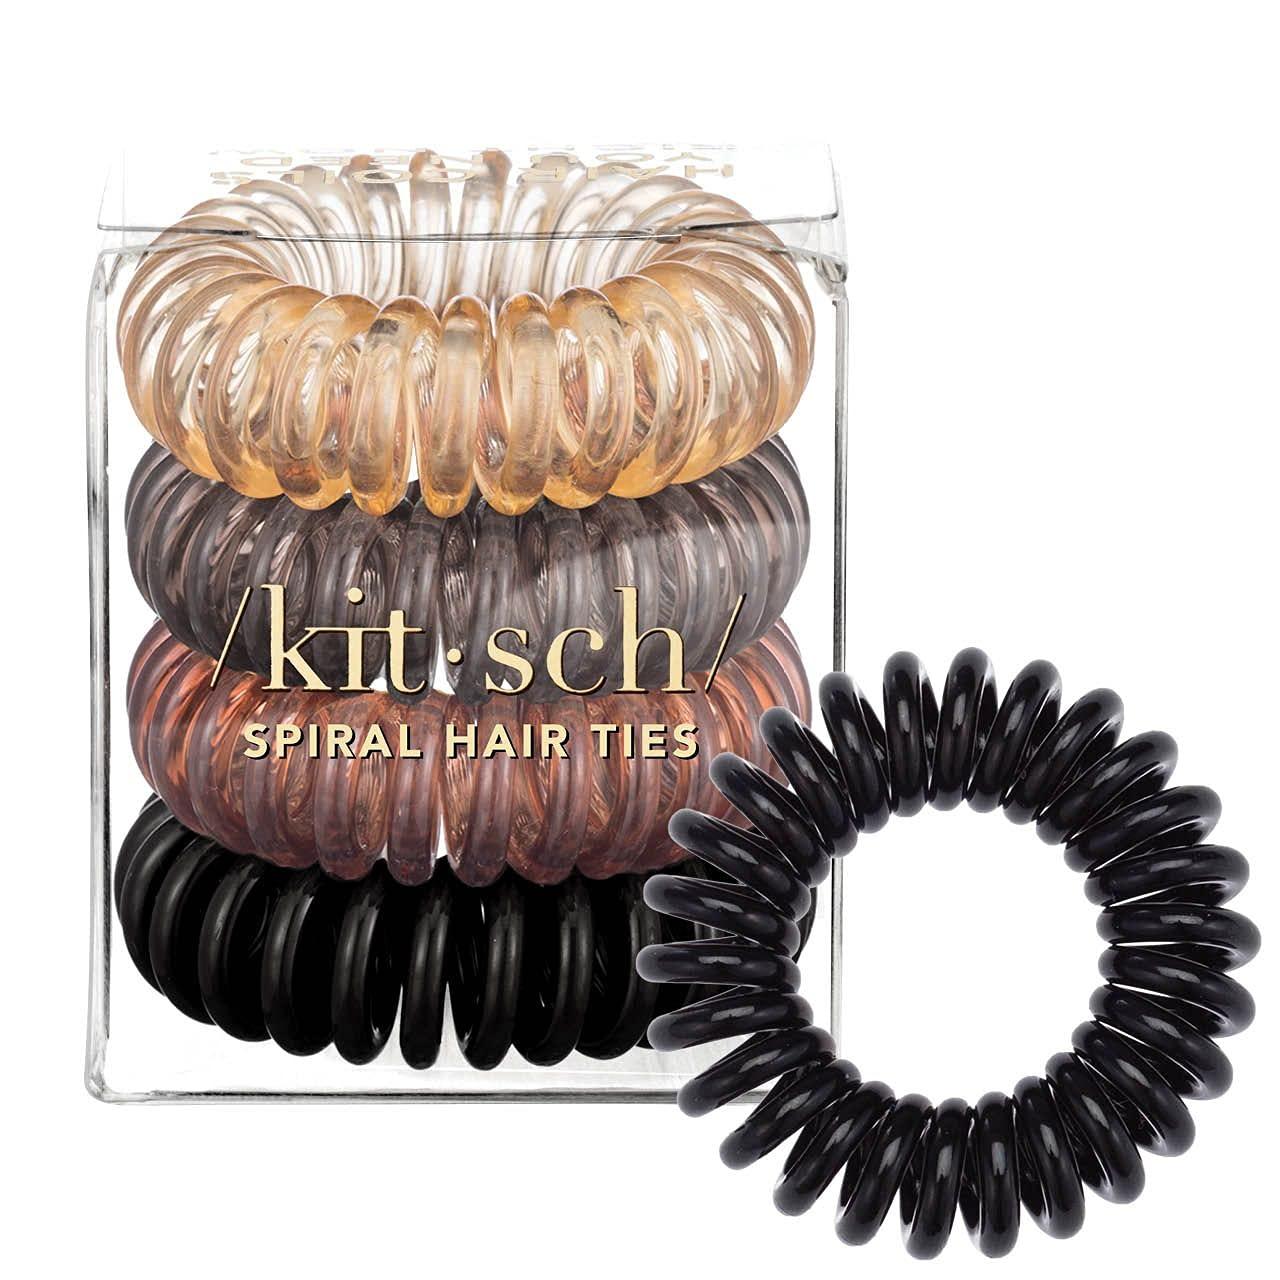 Kitsch Spiral Hair Ties 